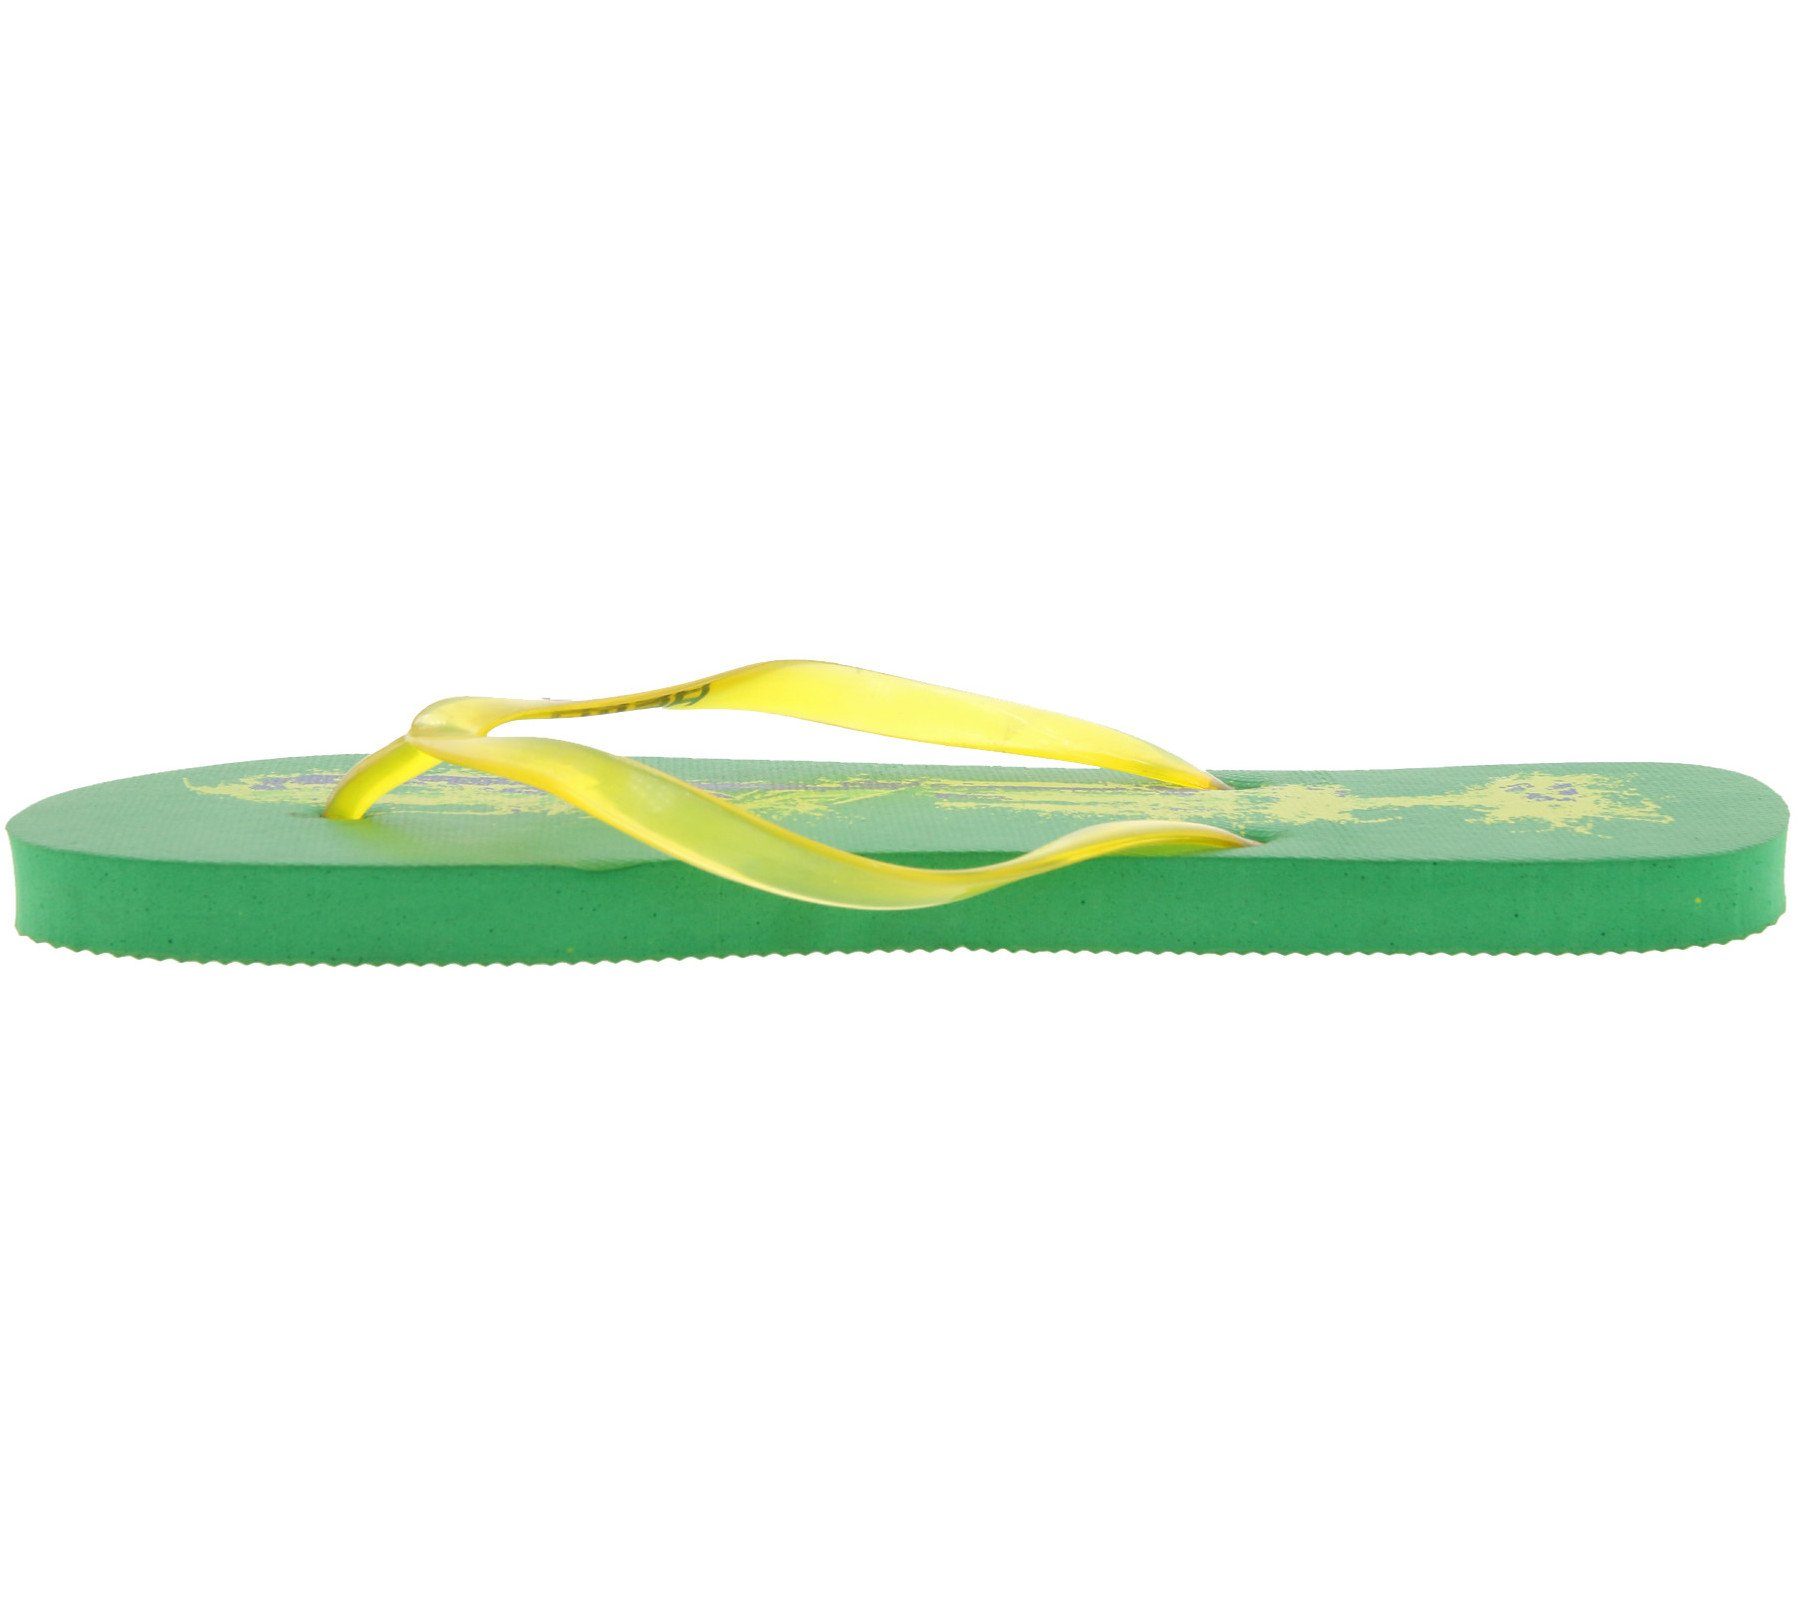 Head »HEAD Slipper Schwimm-Schuhe coole Damen Bade-Latschen Brasilien  Flagge Zehentrenner Grün/Gelb« Outdoorschuh online kaufen | OTTO